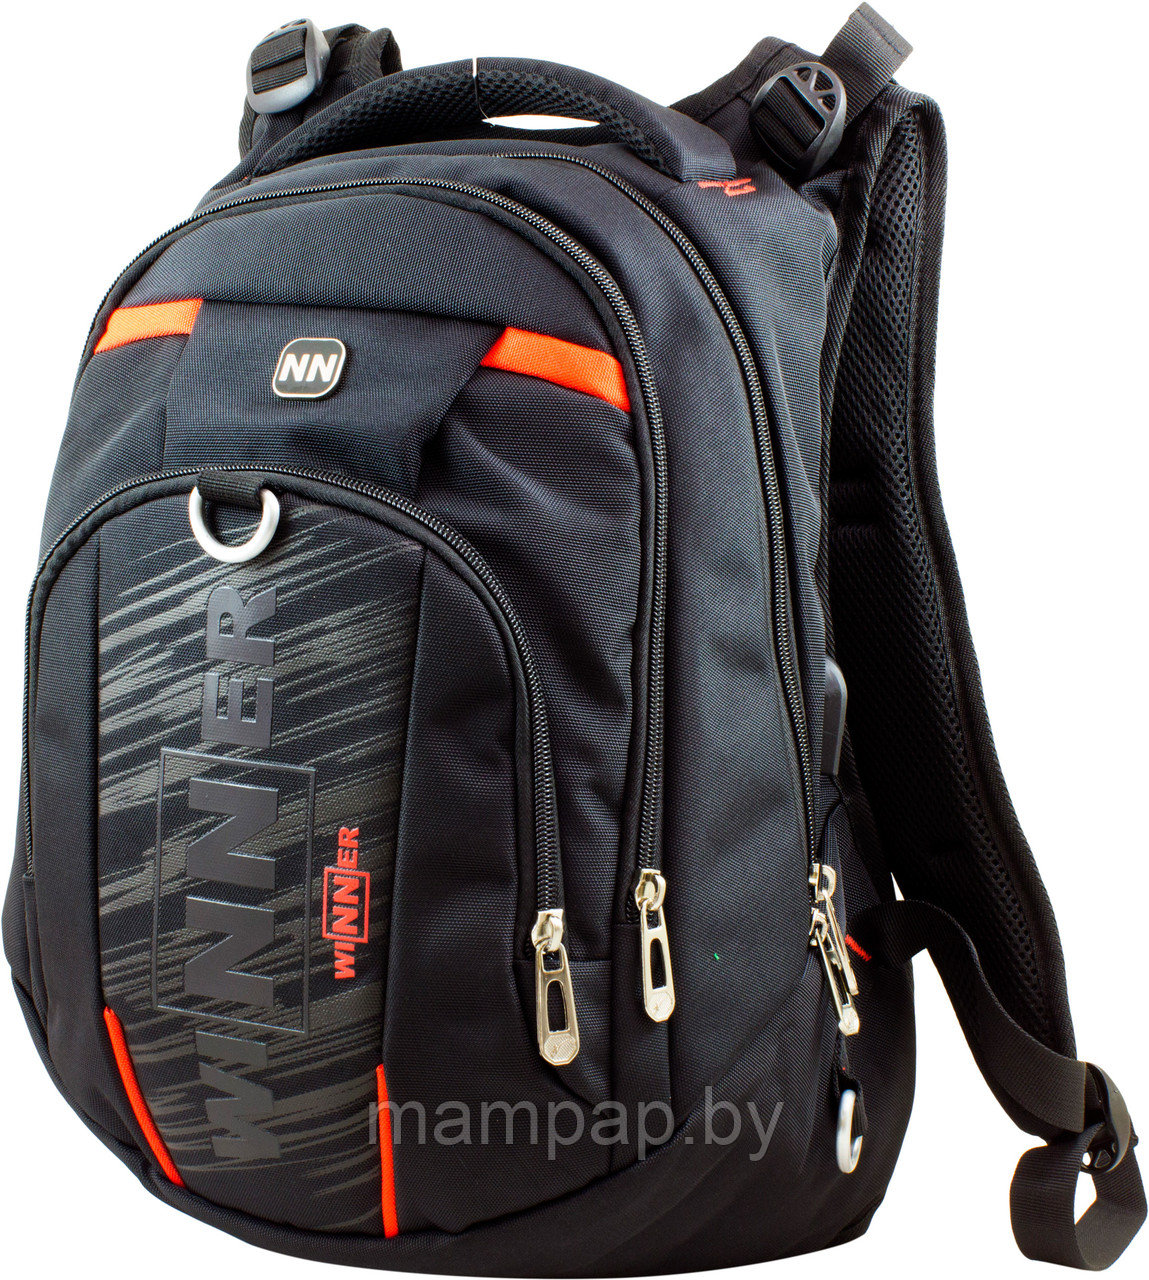 Школьный рюкзак Winner one 8806-4  черный с оранжевыми вставками